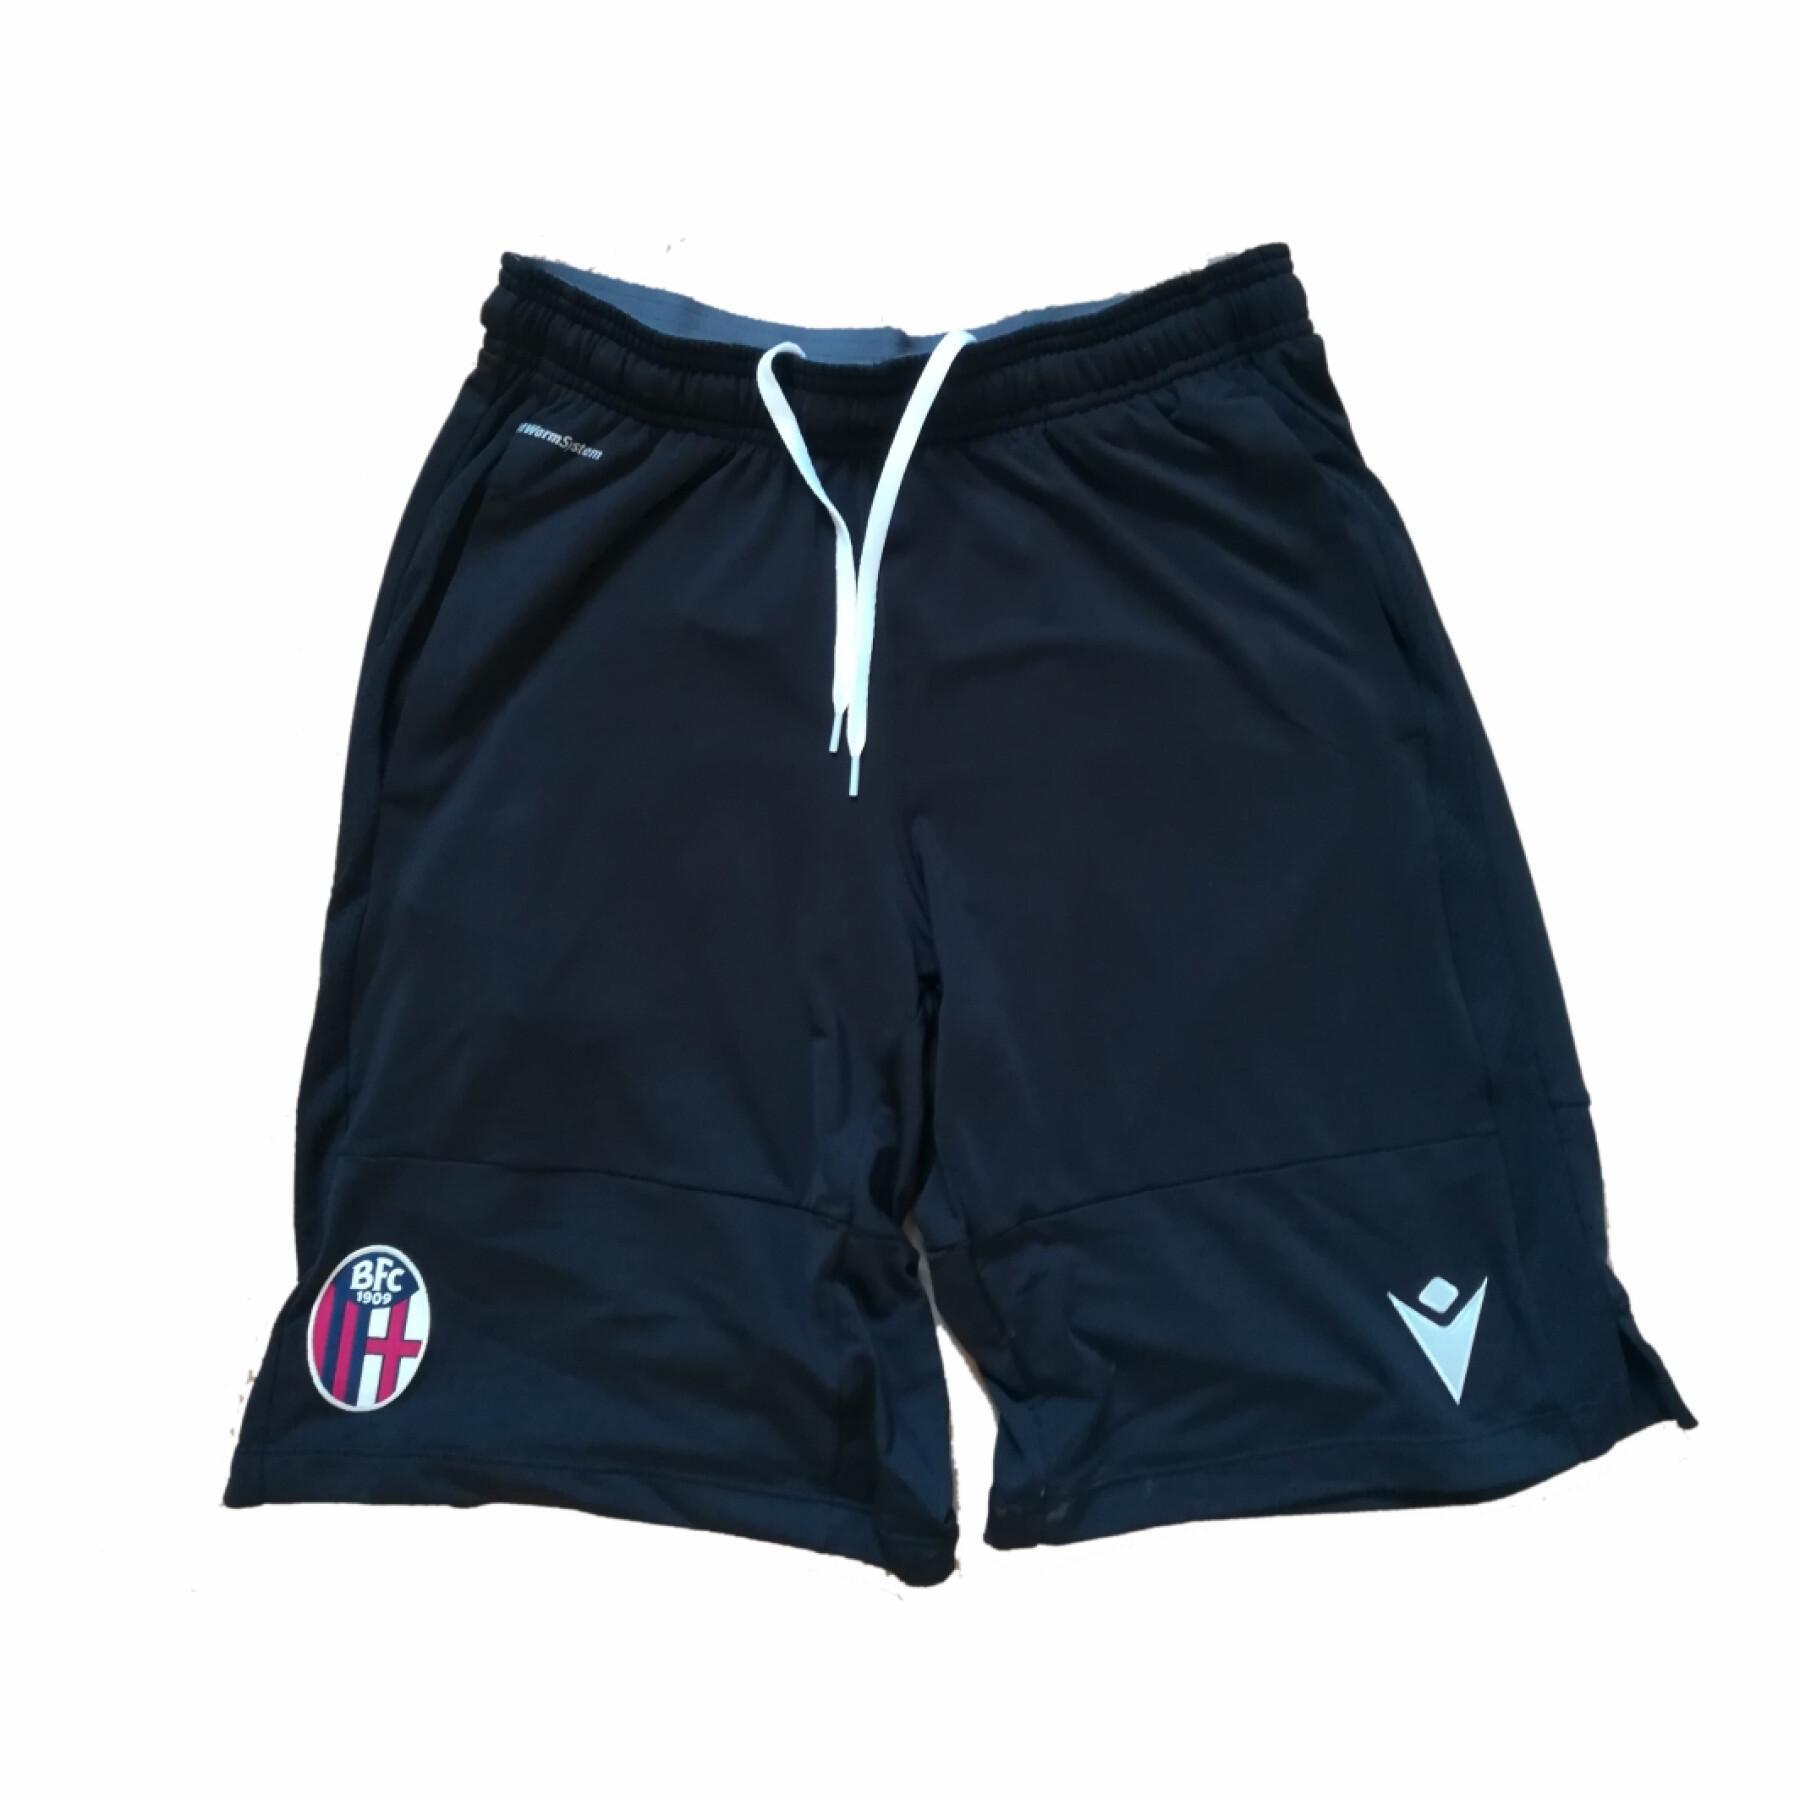 Pantalones cortos para niños Bologne 2020/21